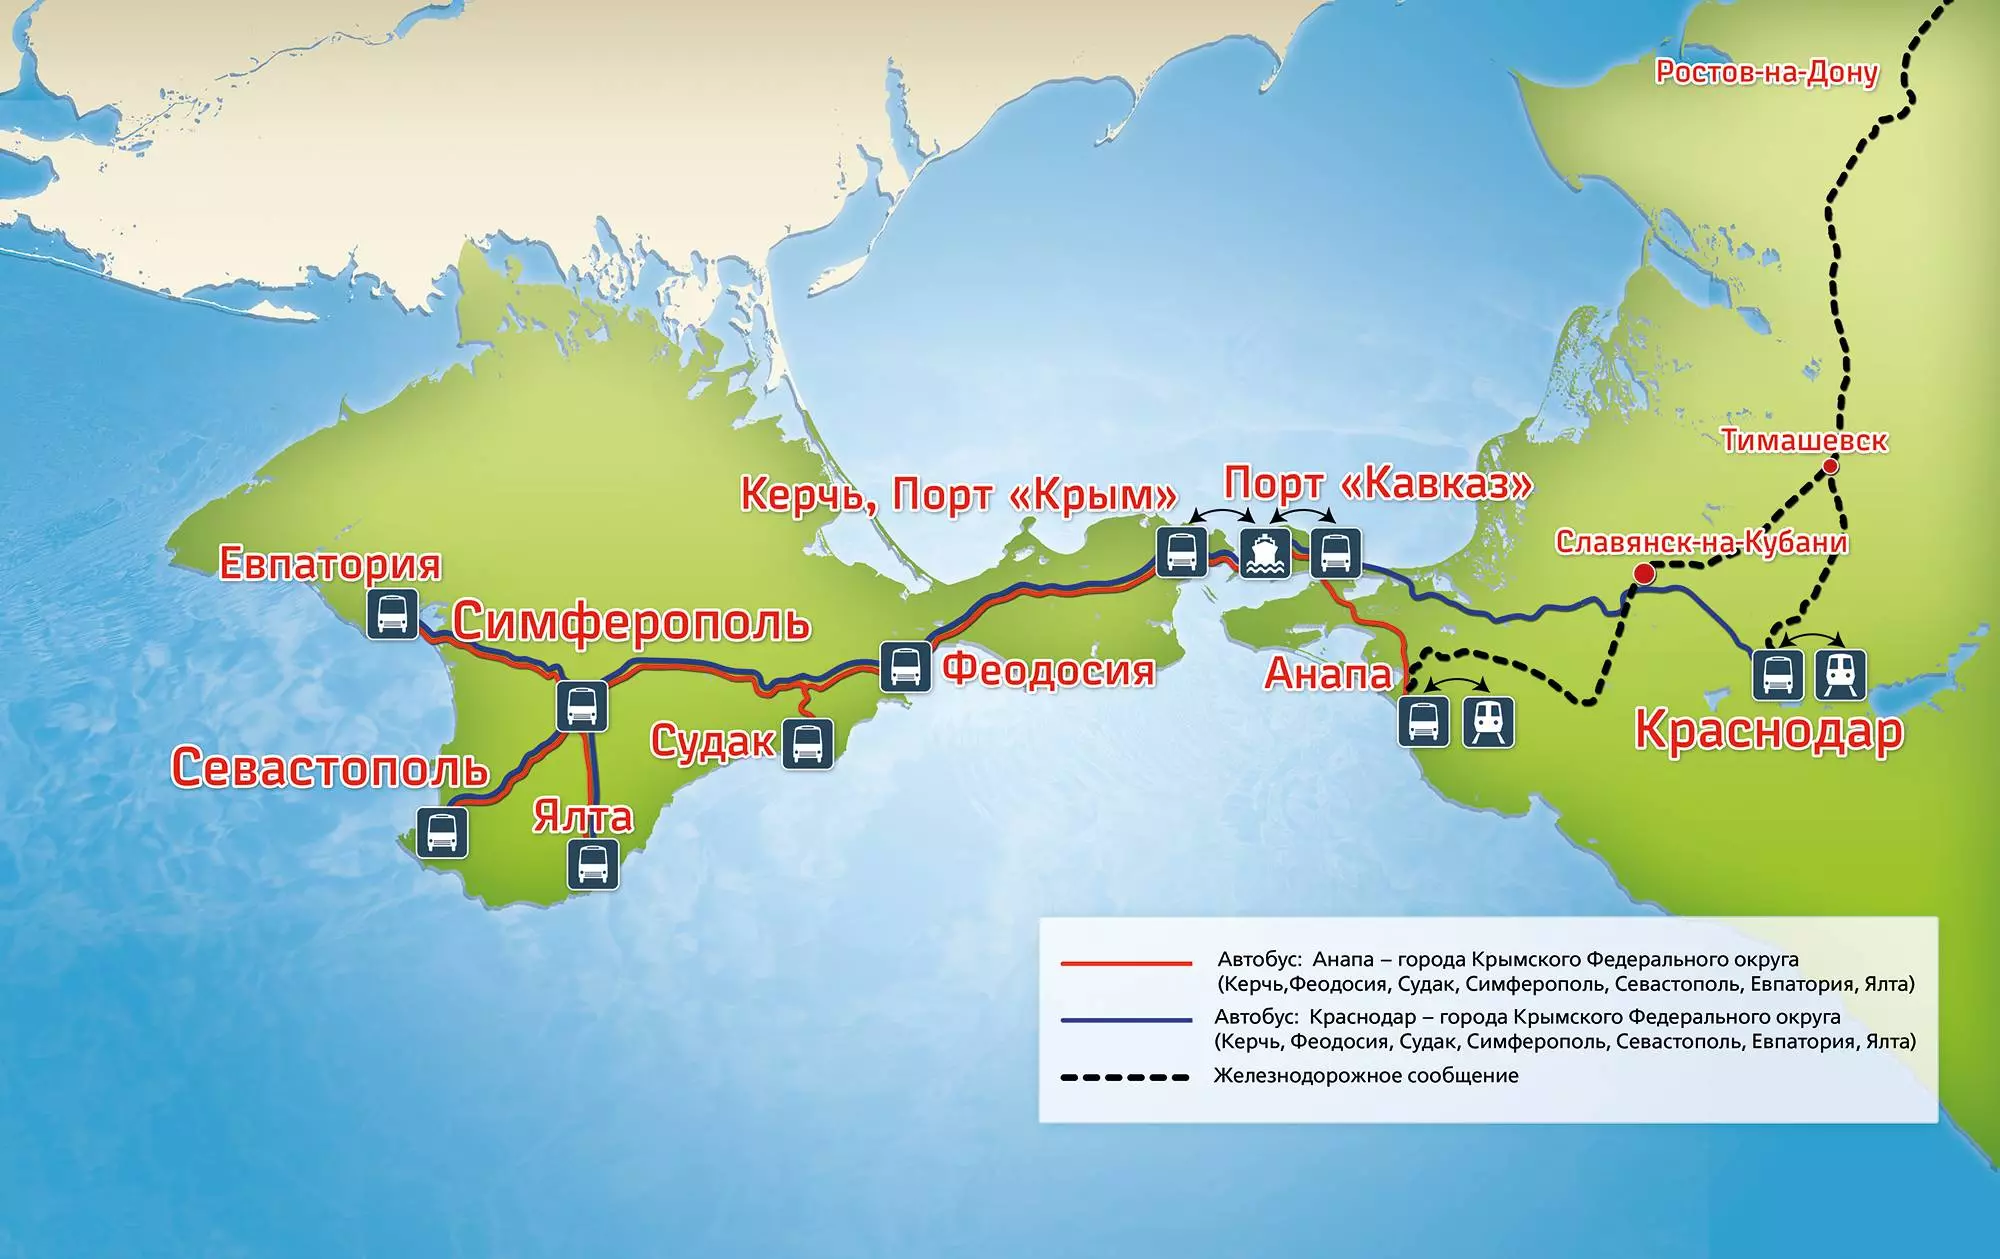 Как добраться в евпаторию на поезде из москвы в 2021 году - цены, маршрут, время в пути